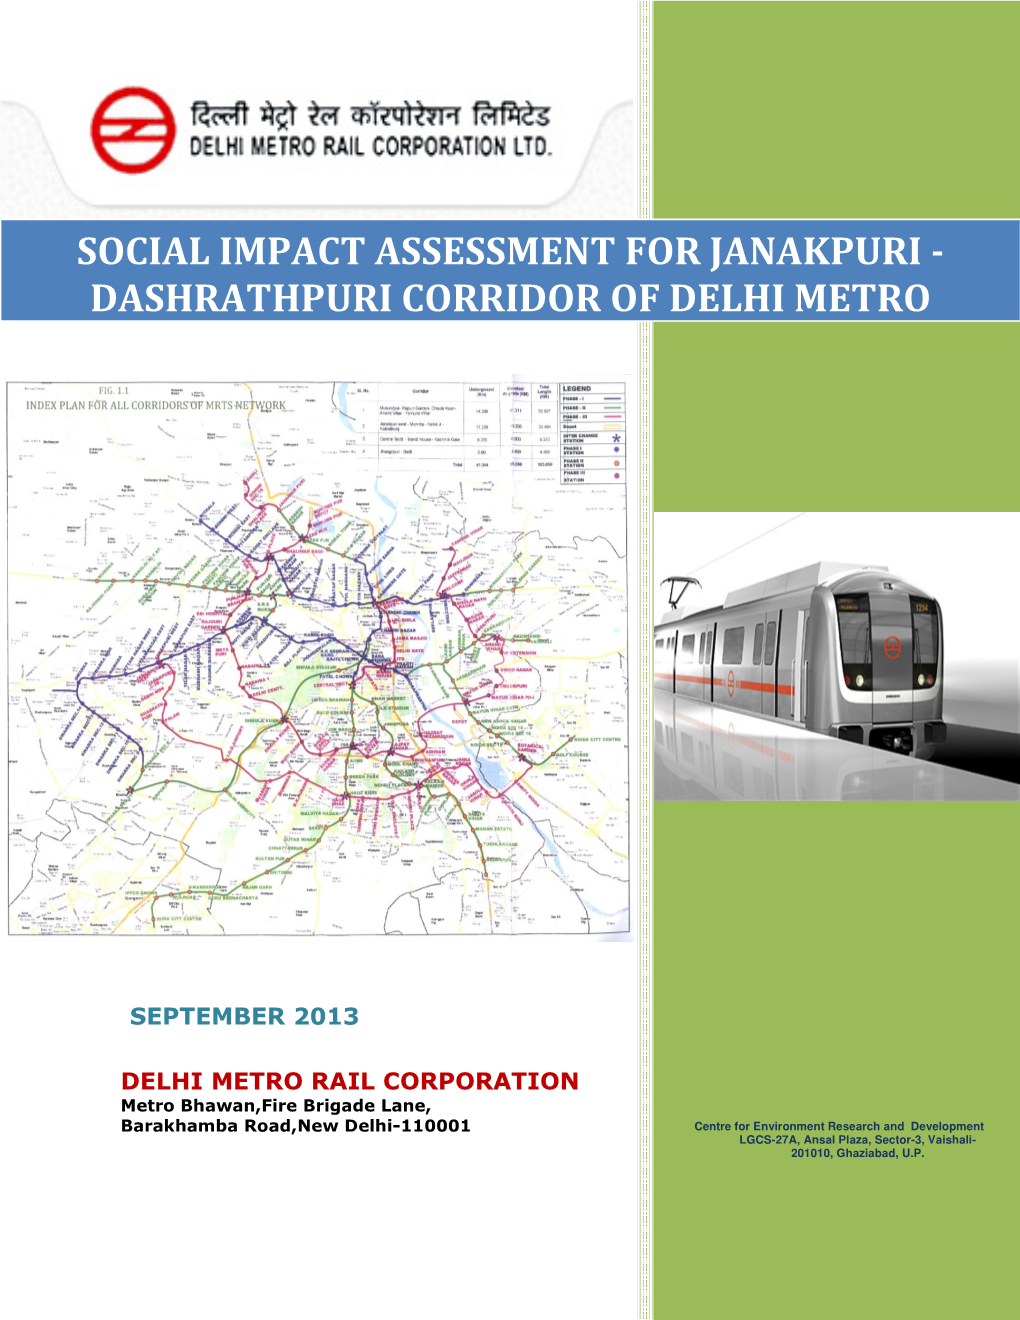 Social Impact Assessment for Janakpuri